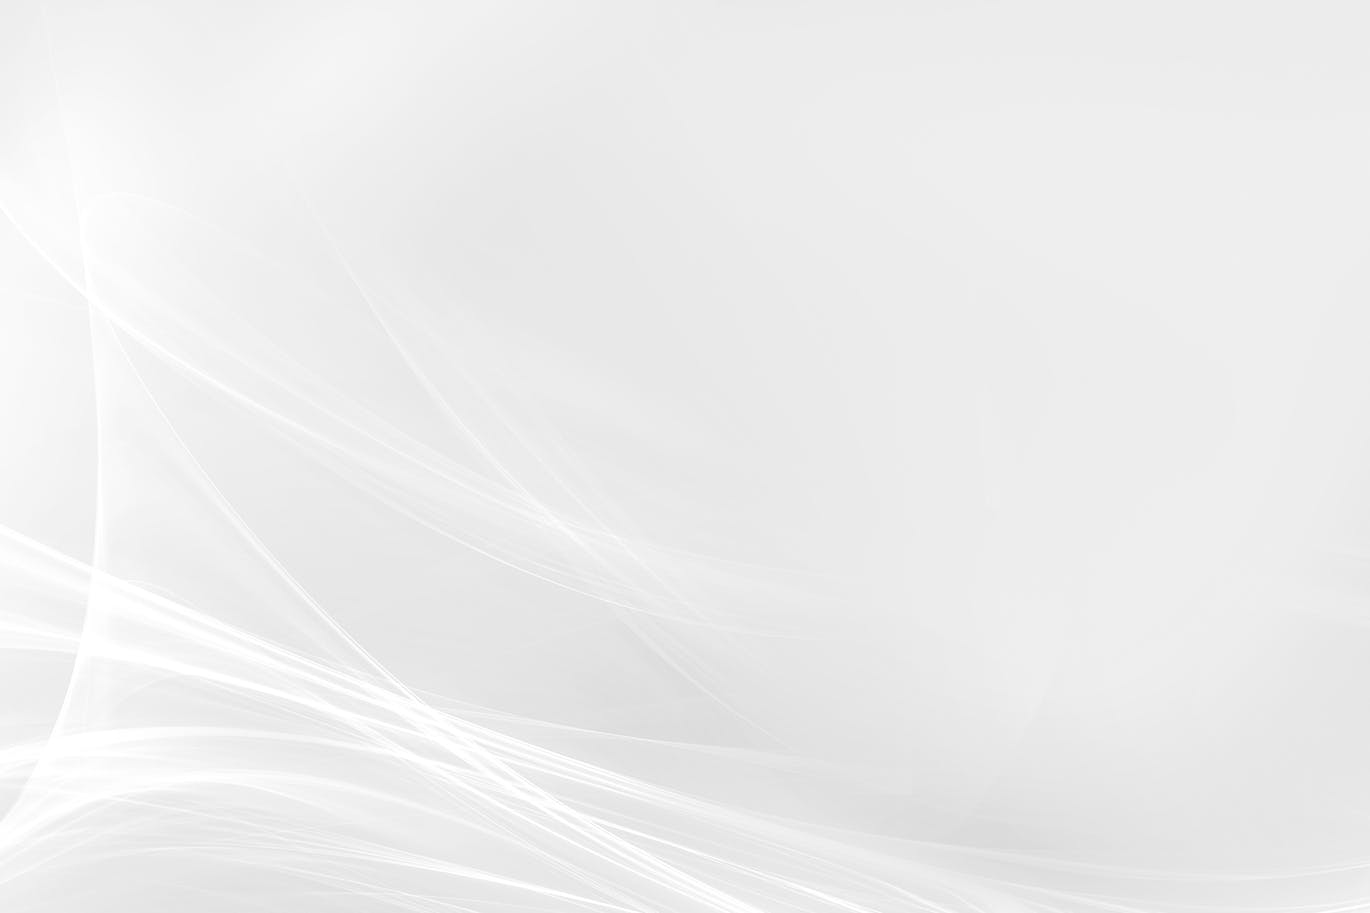 超高清抽象波浪线白色背景素材 abstract white background插图